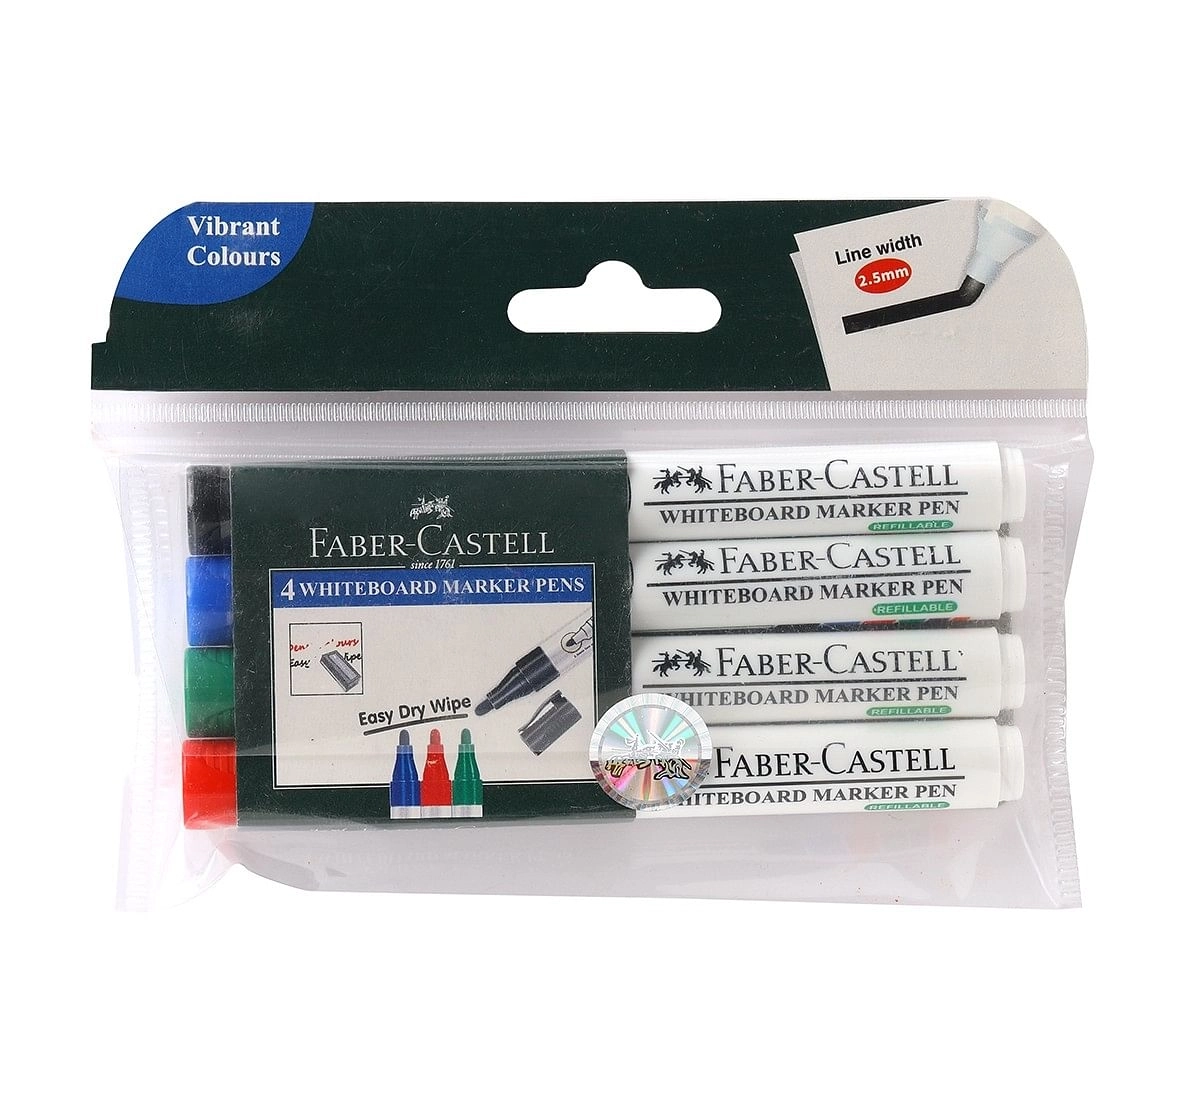 Faber-Castell 155404-whiteboard marker pen set of 4, 18Y+